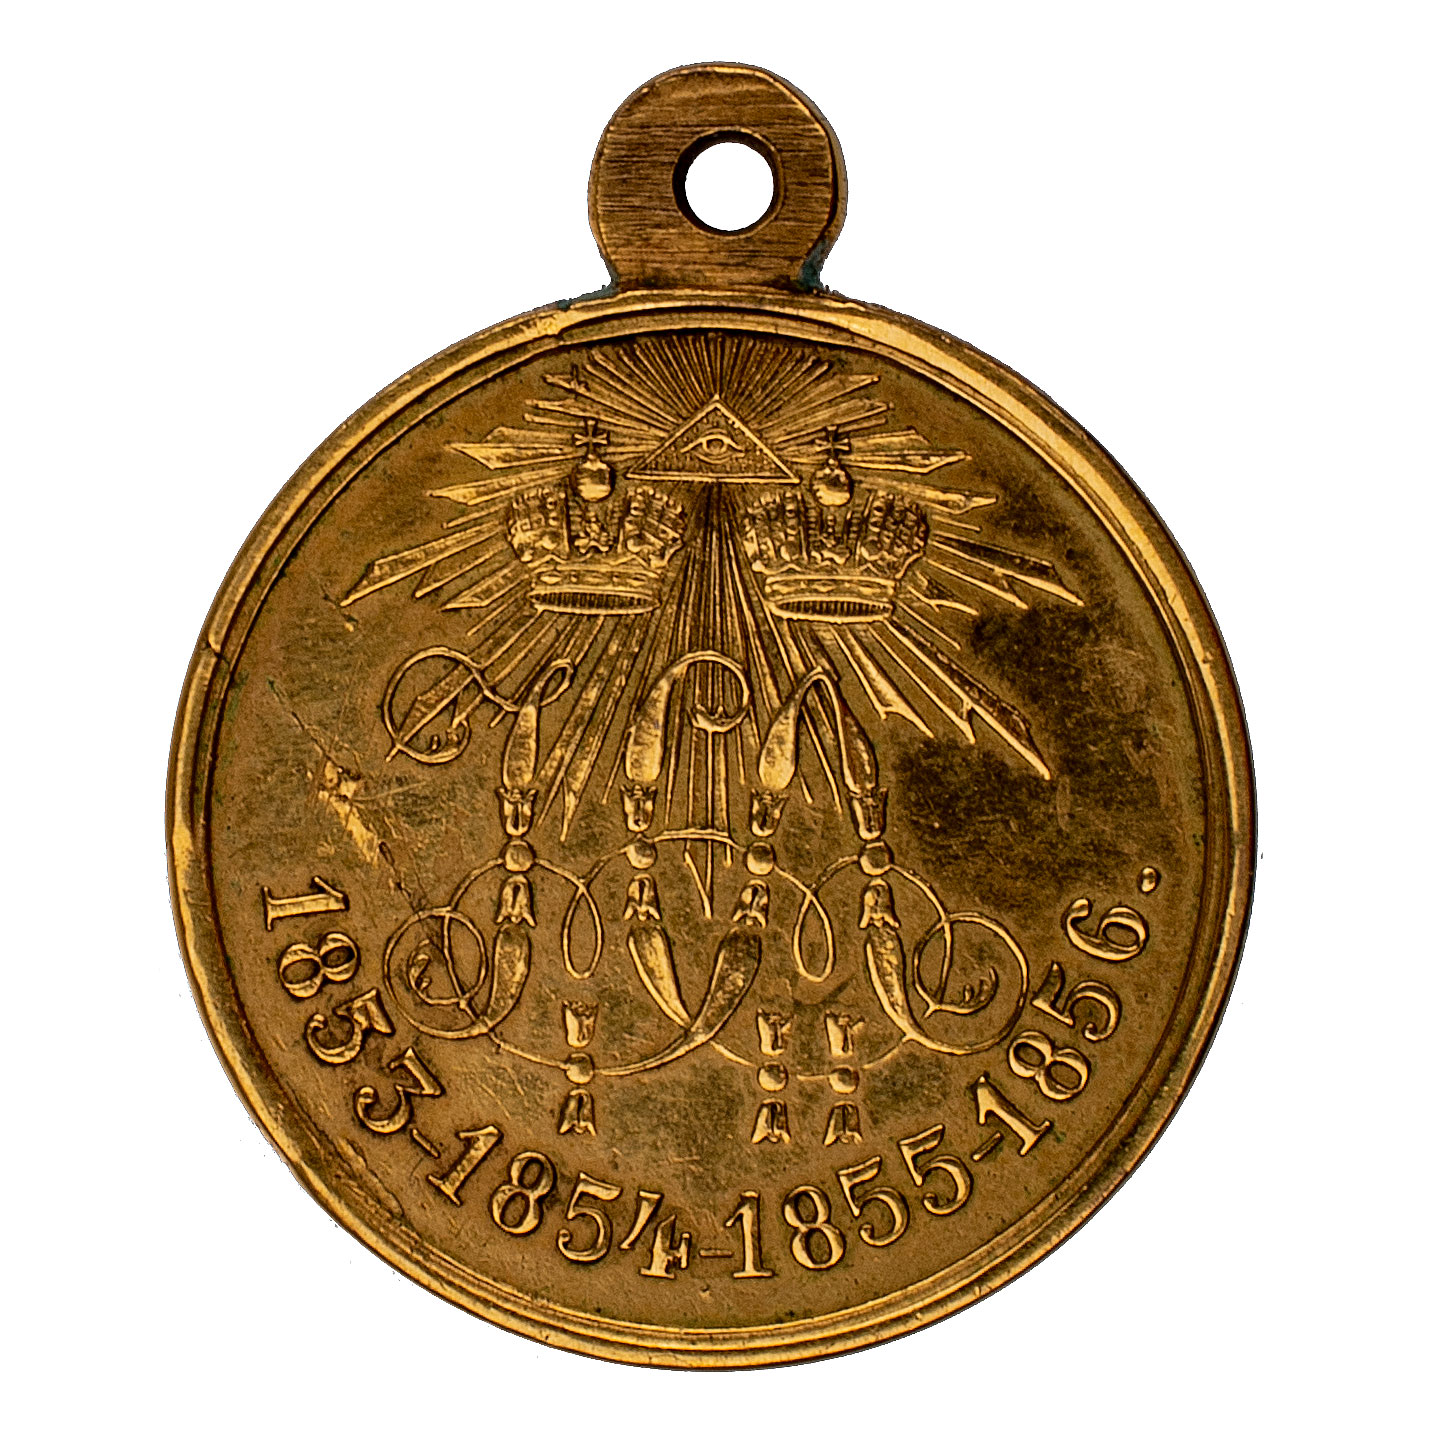 Медаль "В память войны 1853 - 1856 гг". Светлая бронза, позолота.